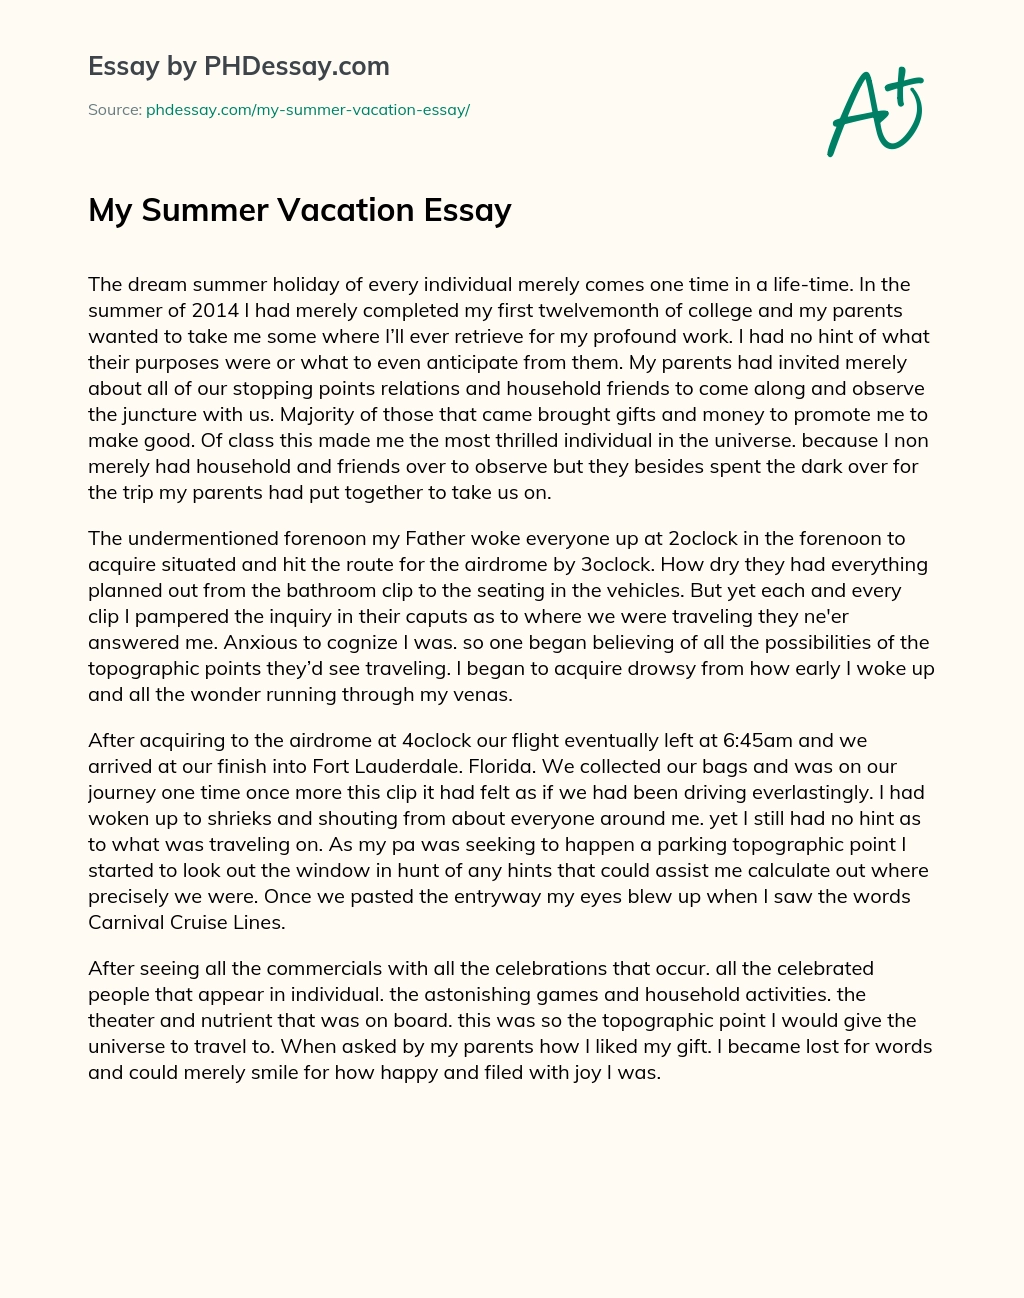 My Summer Vacation Essay essay